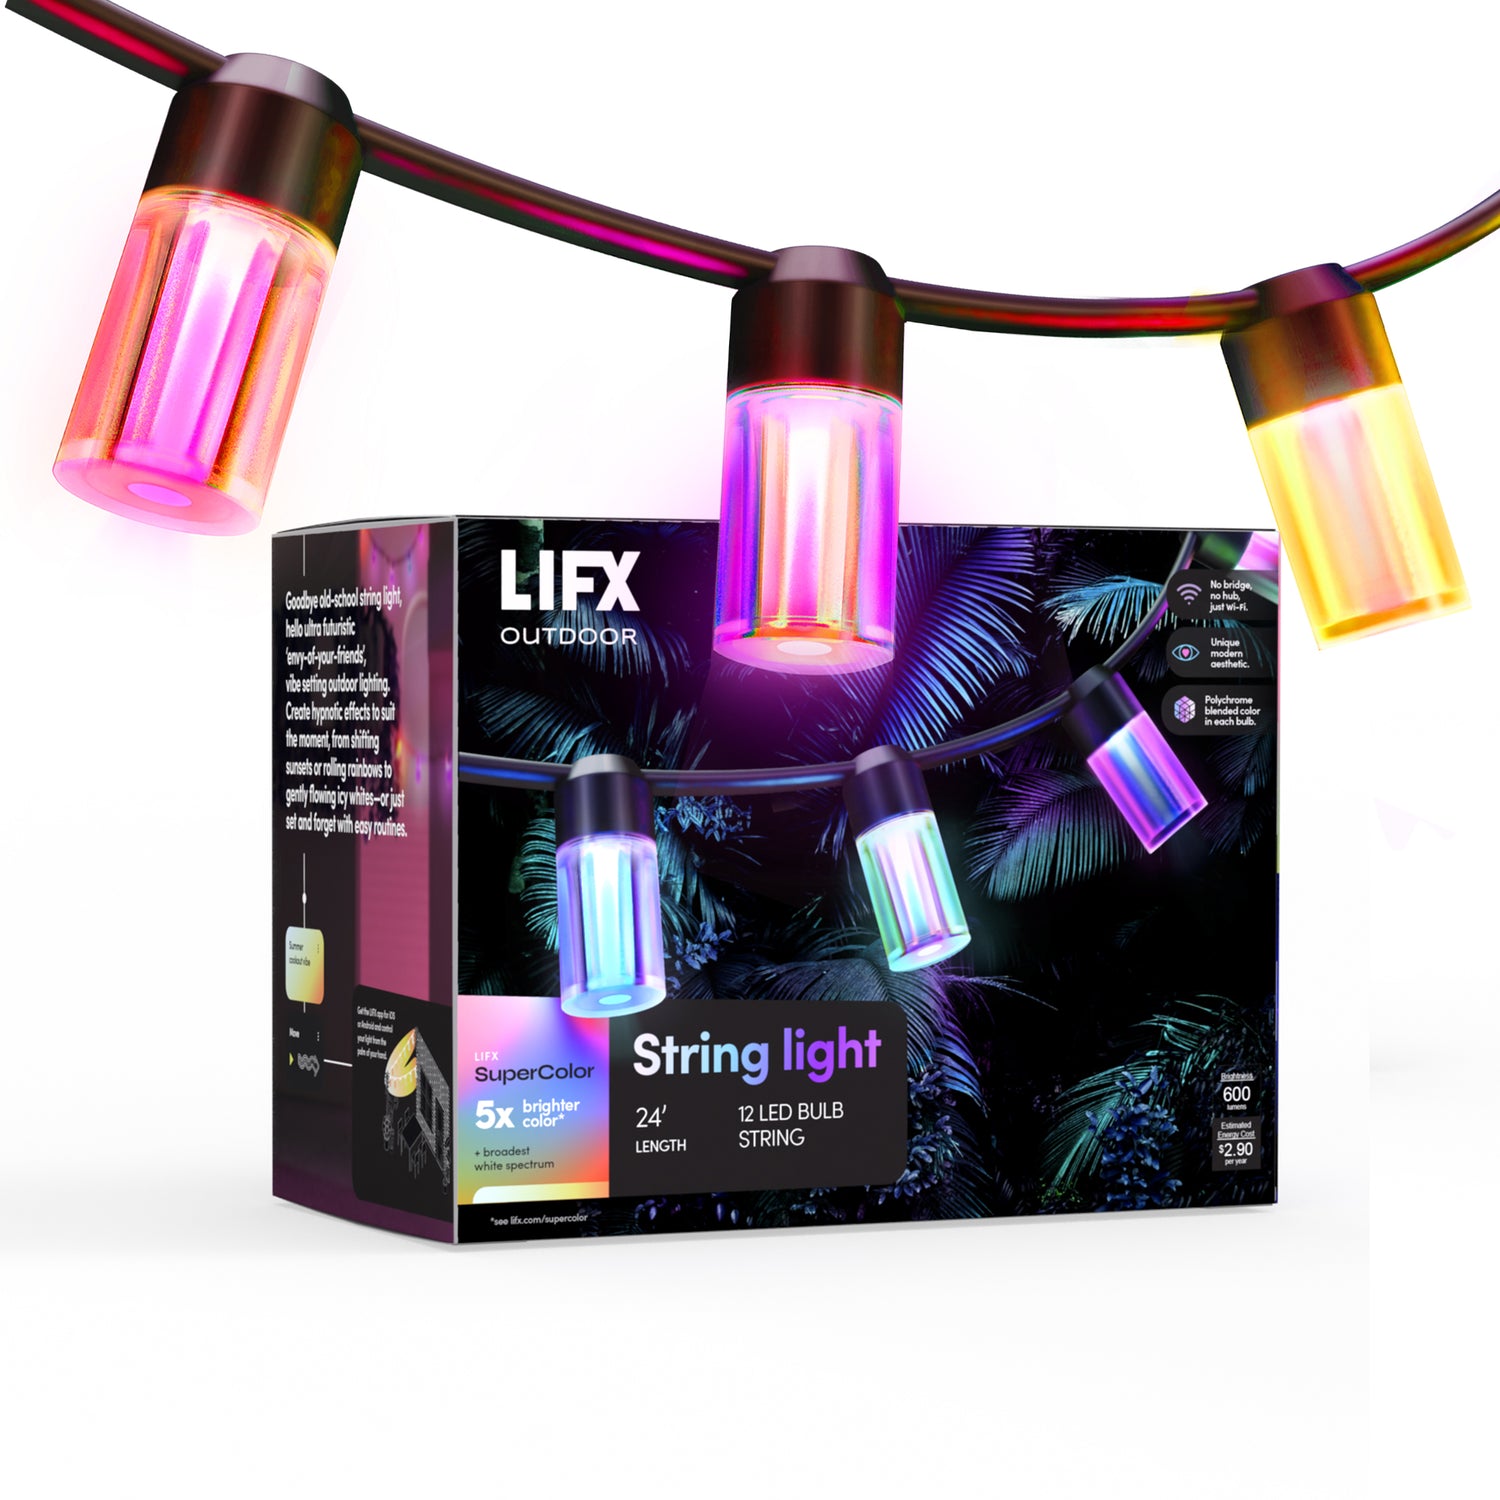 Havells Sylvania reinventa la tecnologia LED con la lámpara inteligente LIFX